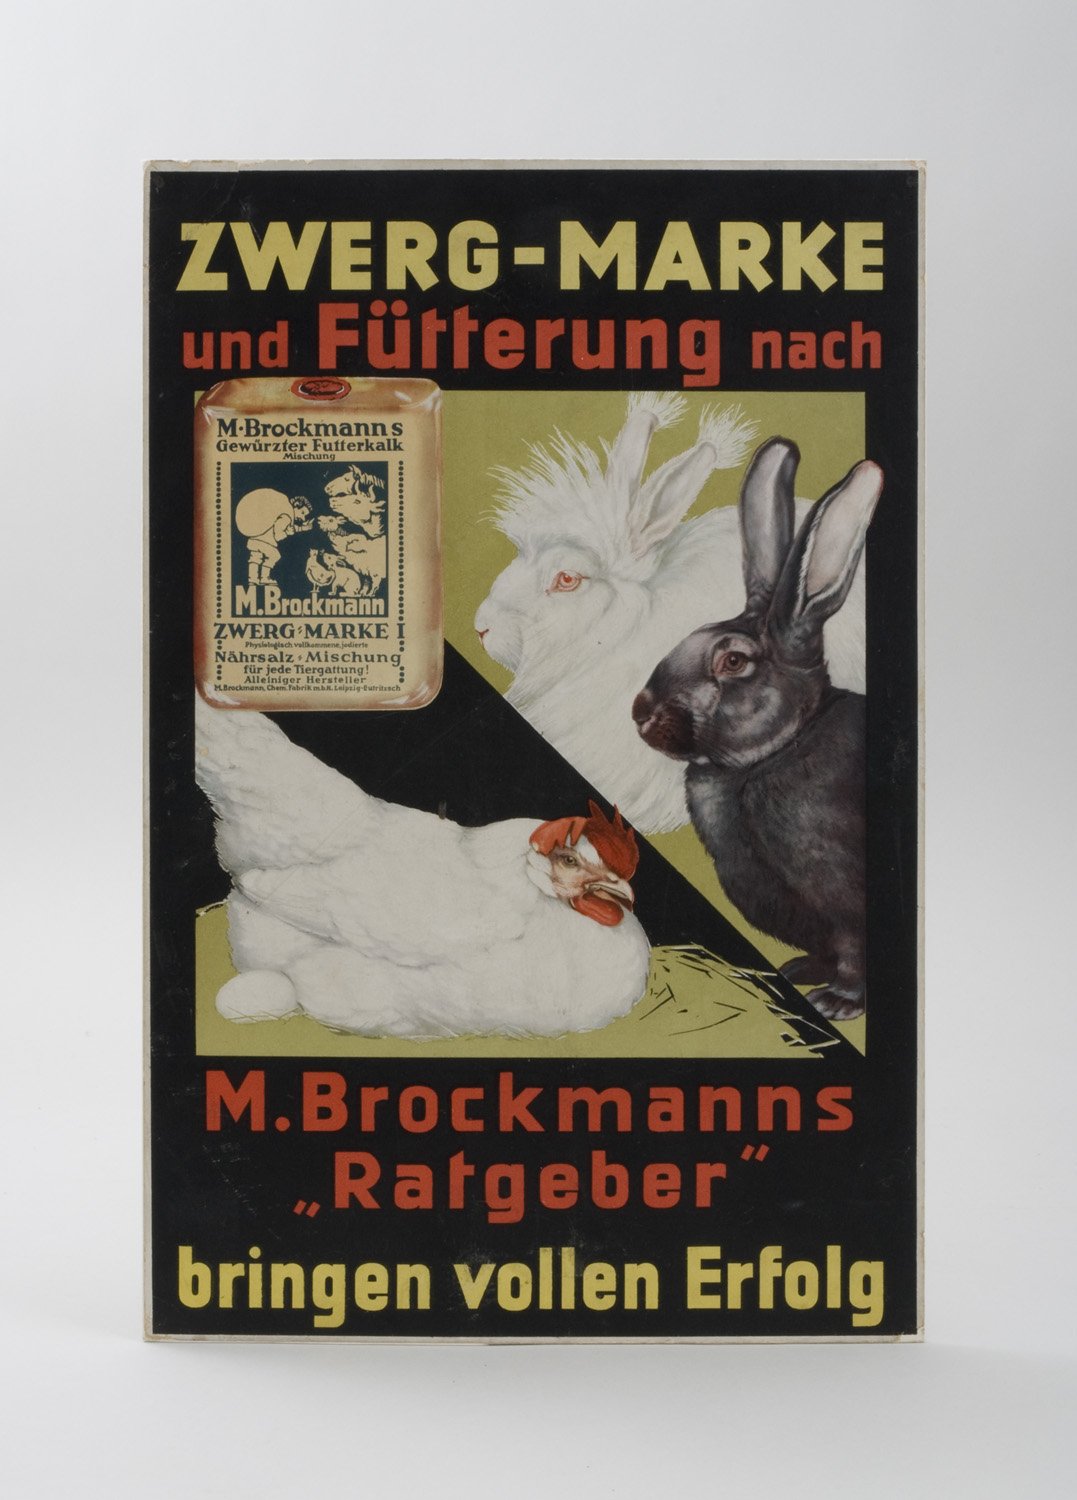 Werbeaufsteller für "Gewürzten Futterkalk Zwerg-Marke" und "M. Brockmanns Ratgeber" (Stiftung Domäne Dahlem - Landgut und Museum, Weiternutzung nur mit Genehmigung des Museums CC BY-NC-SA)